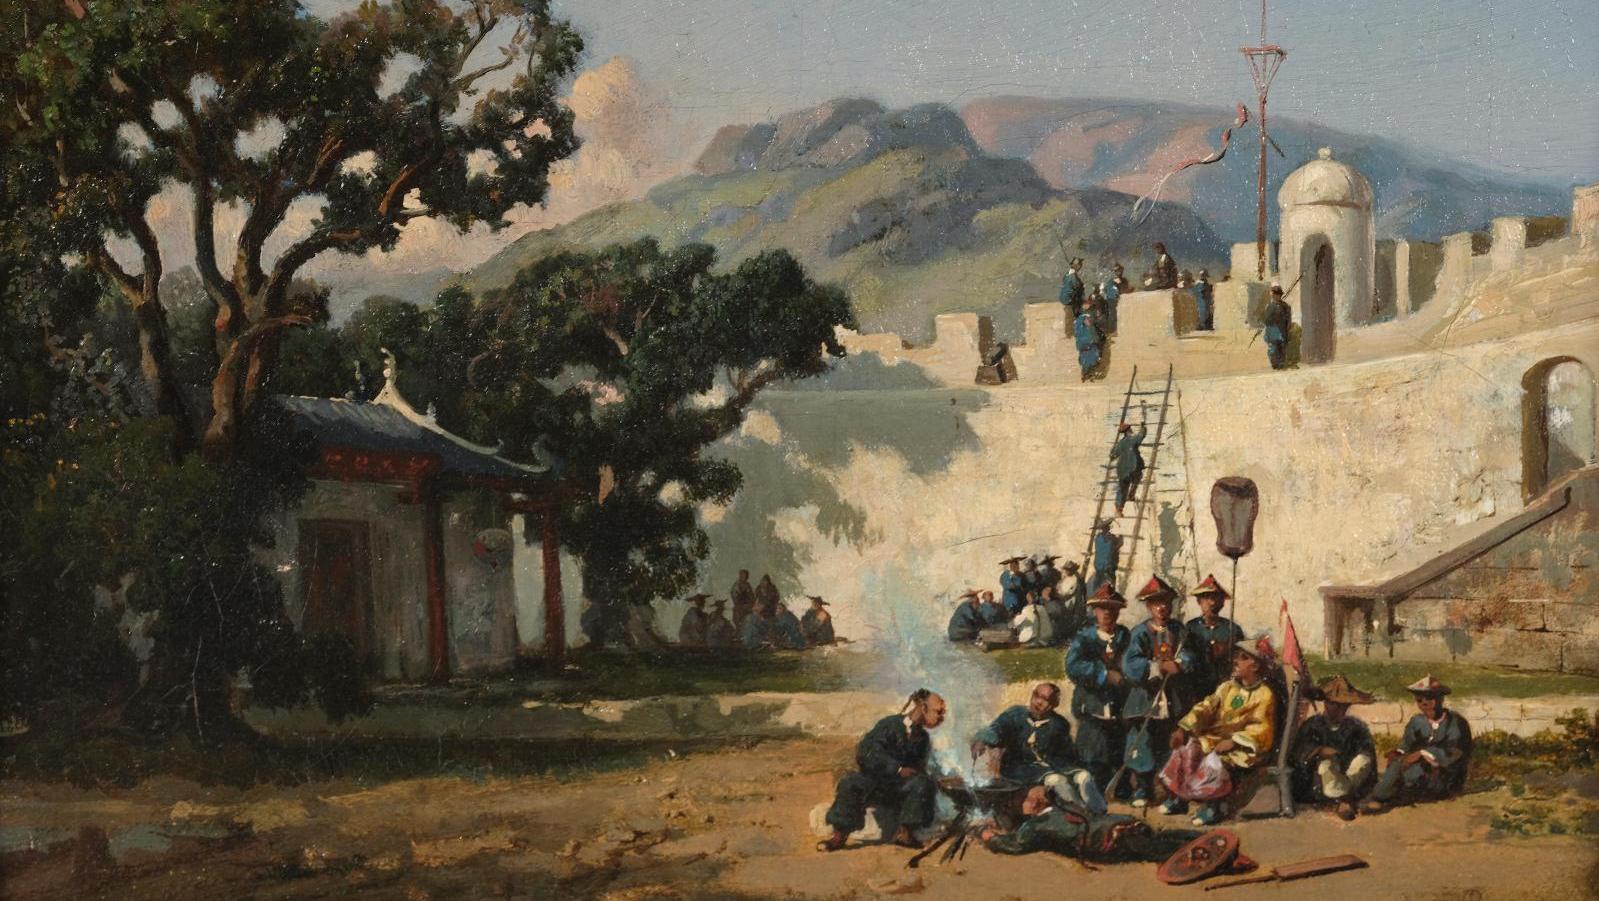 Auguste Borget (1809-1877), Scène de garnison en Chine, huile sur toile, 19 x 27 cm.... La Chine vécue par Auguste Borget